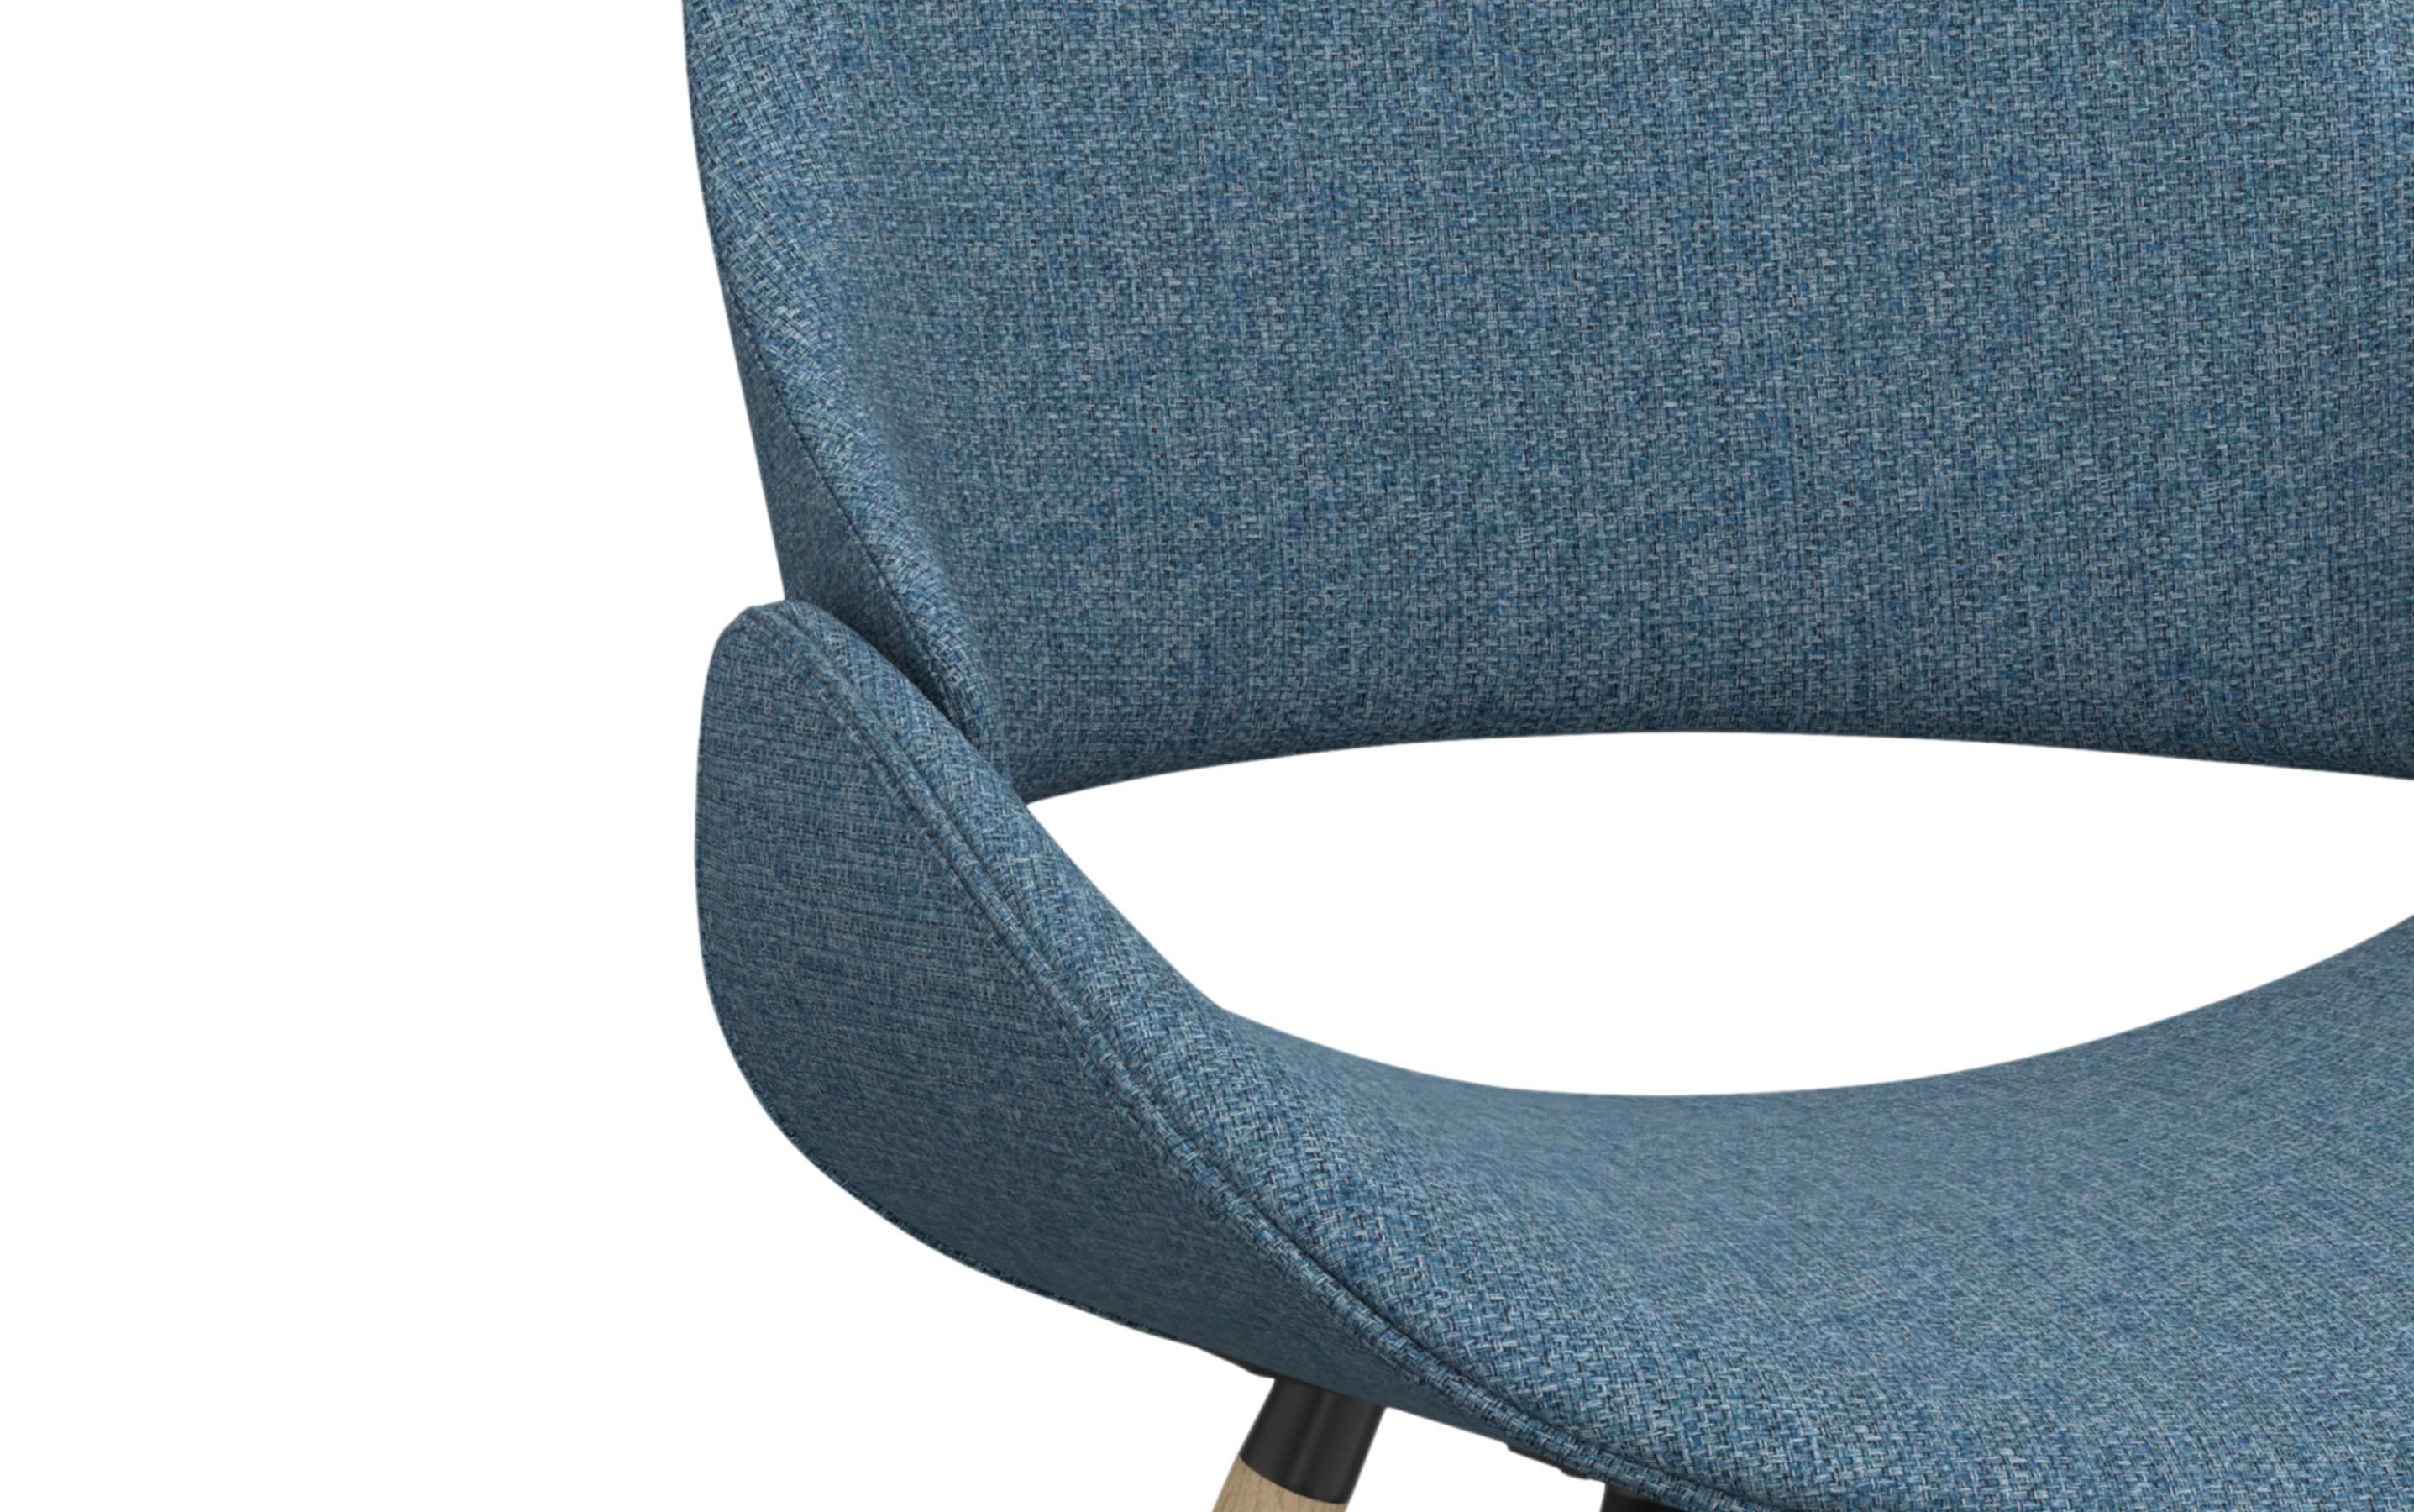 Denim Blue Natural Oak | Malden Bentwood Dining Chair